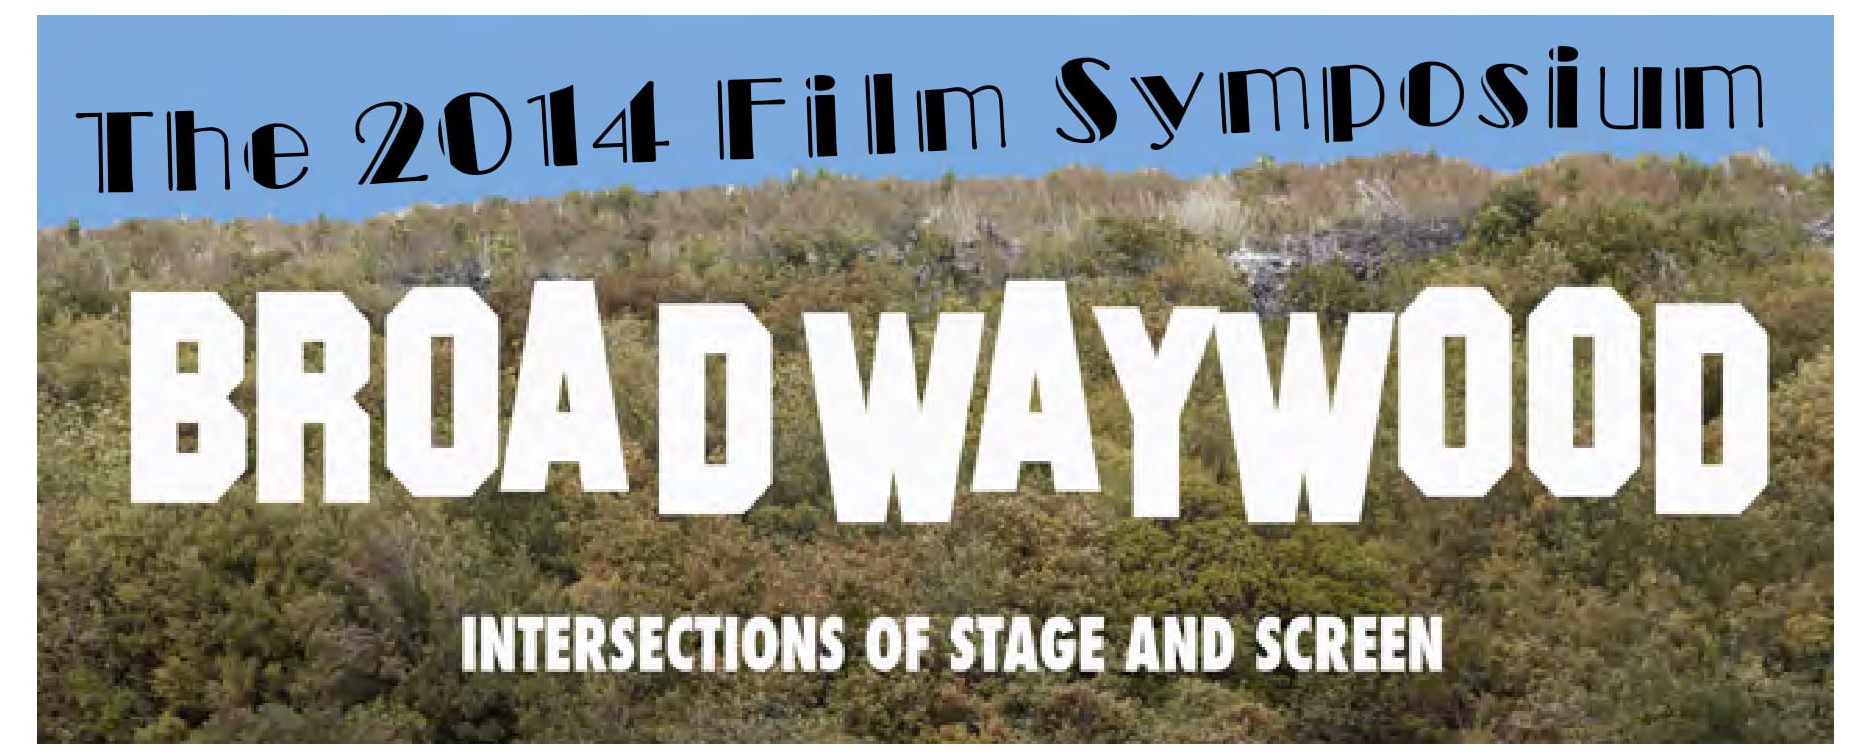 2014 Film Symposium